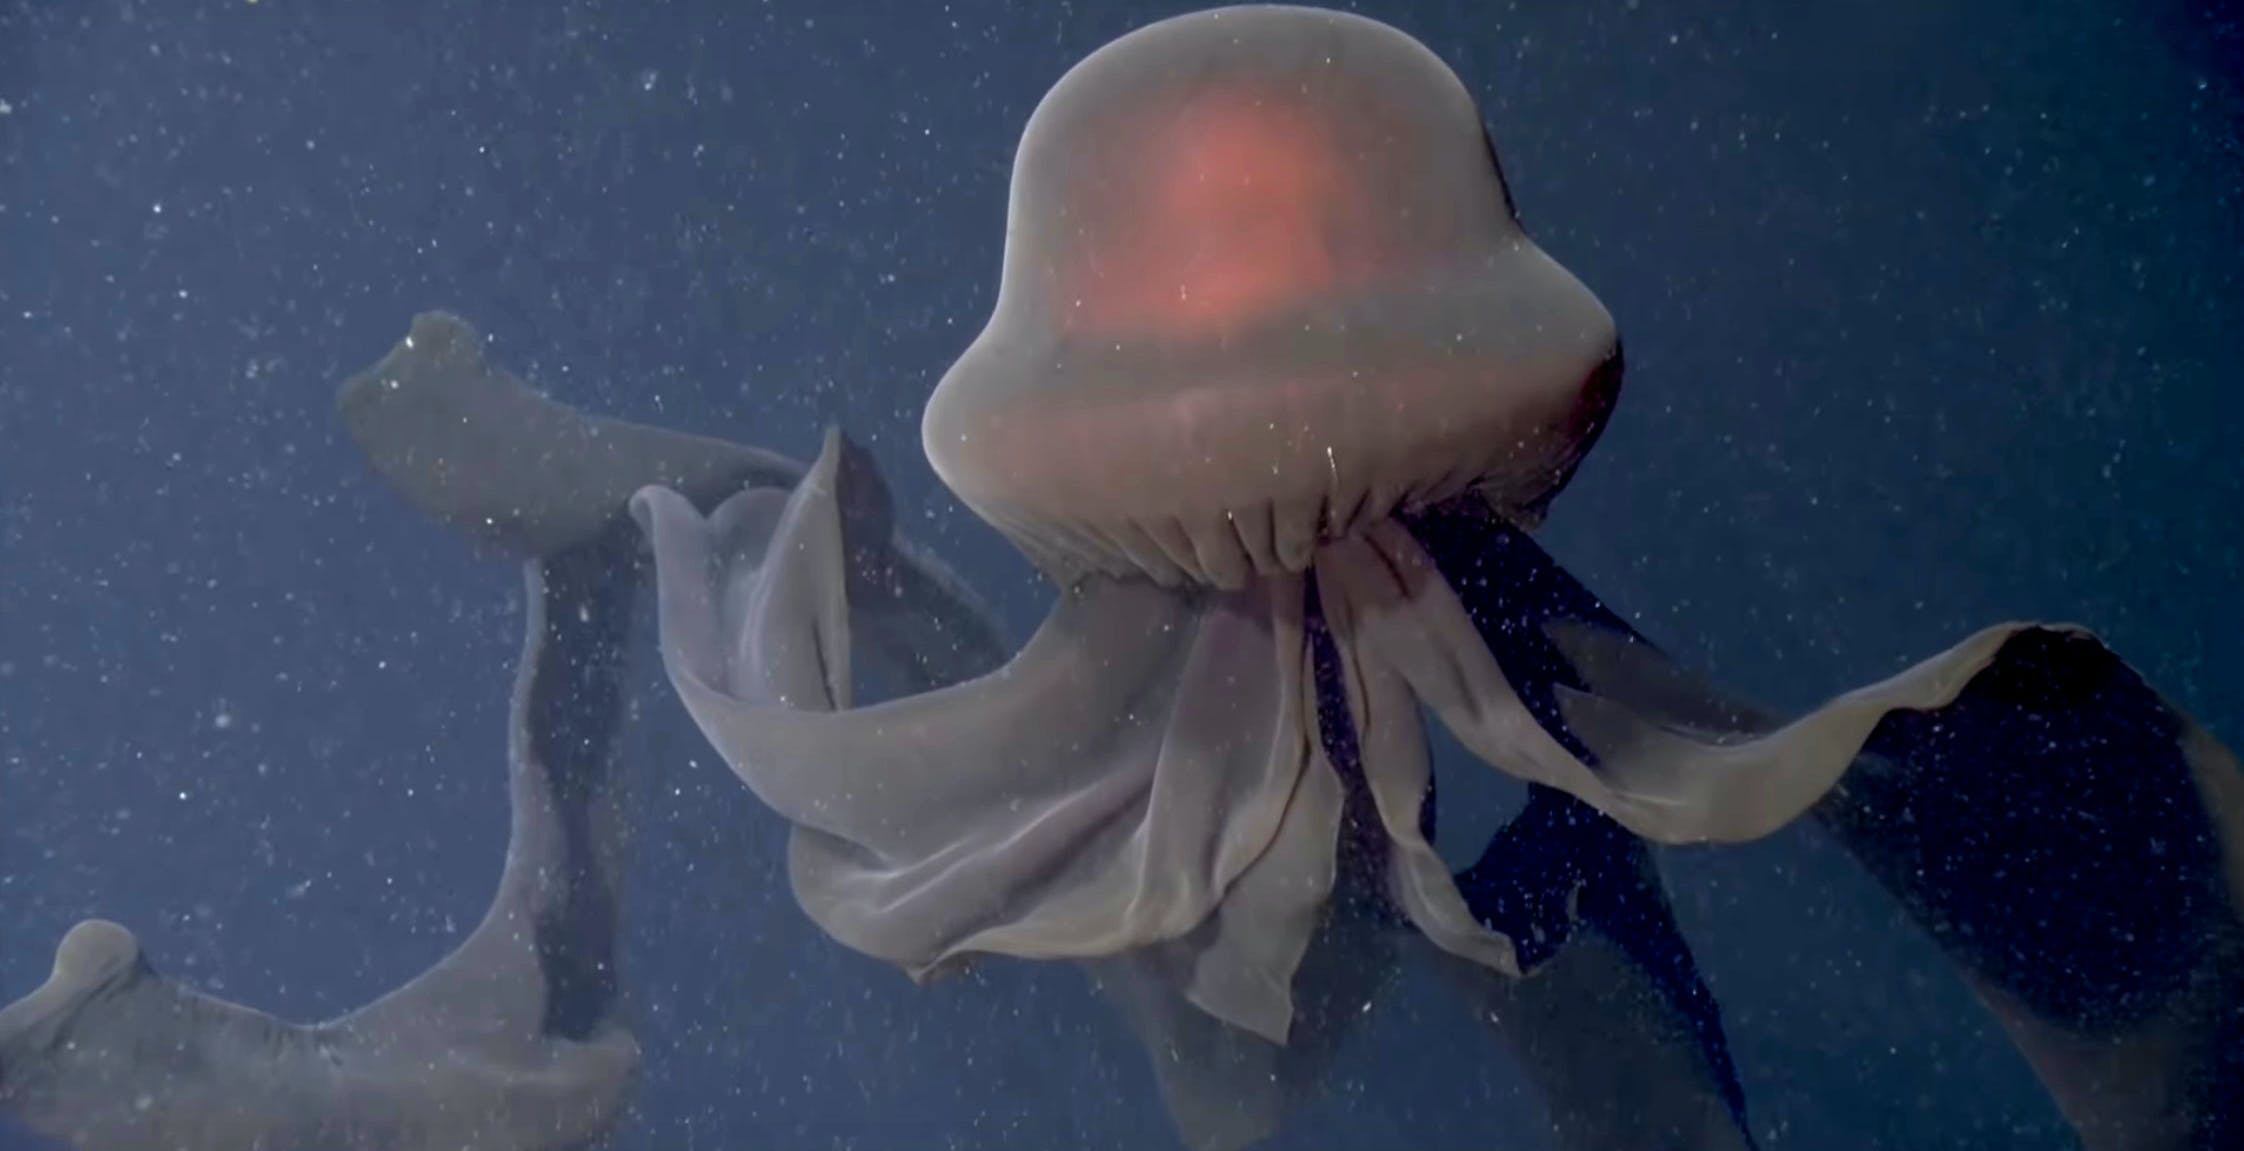 Video in 4K anche nelle profondità dell'Oceano Pacifico per riprendere la fauna marina. Immagini eccezionali